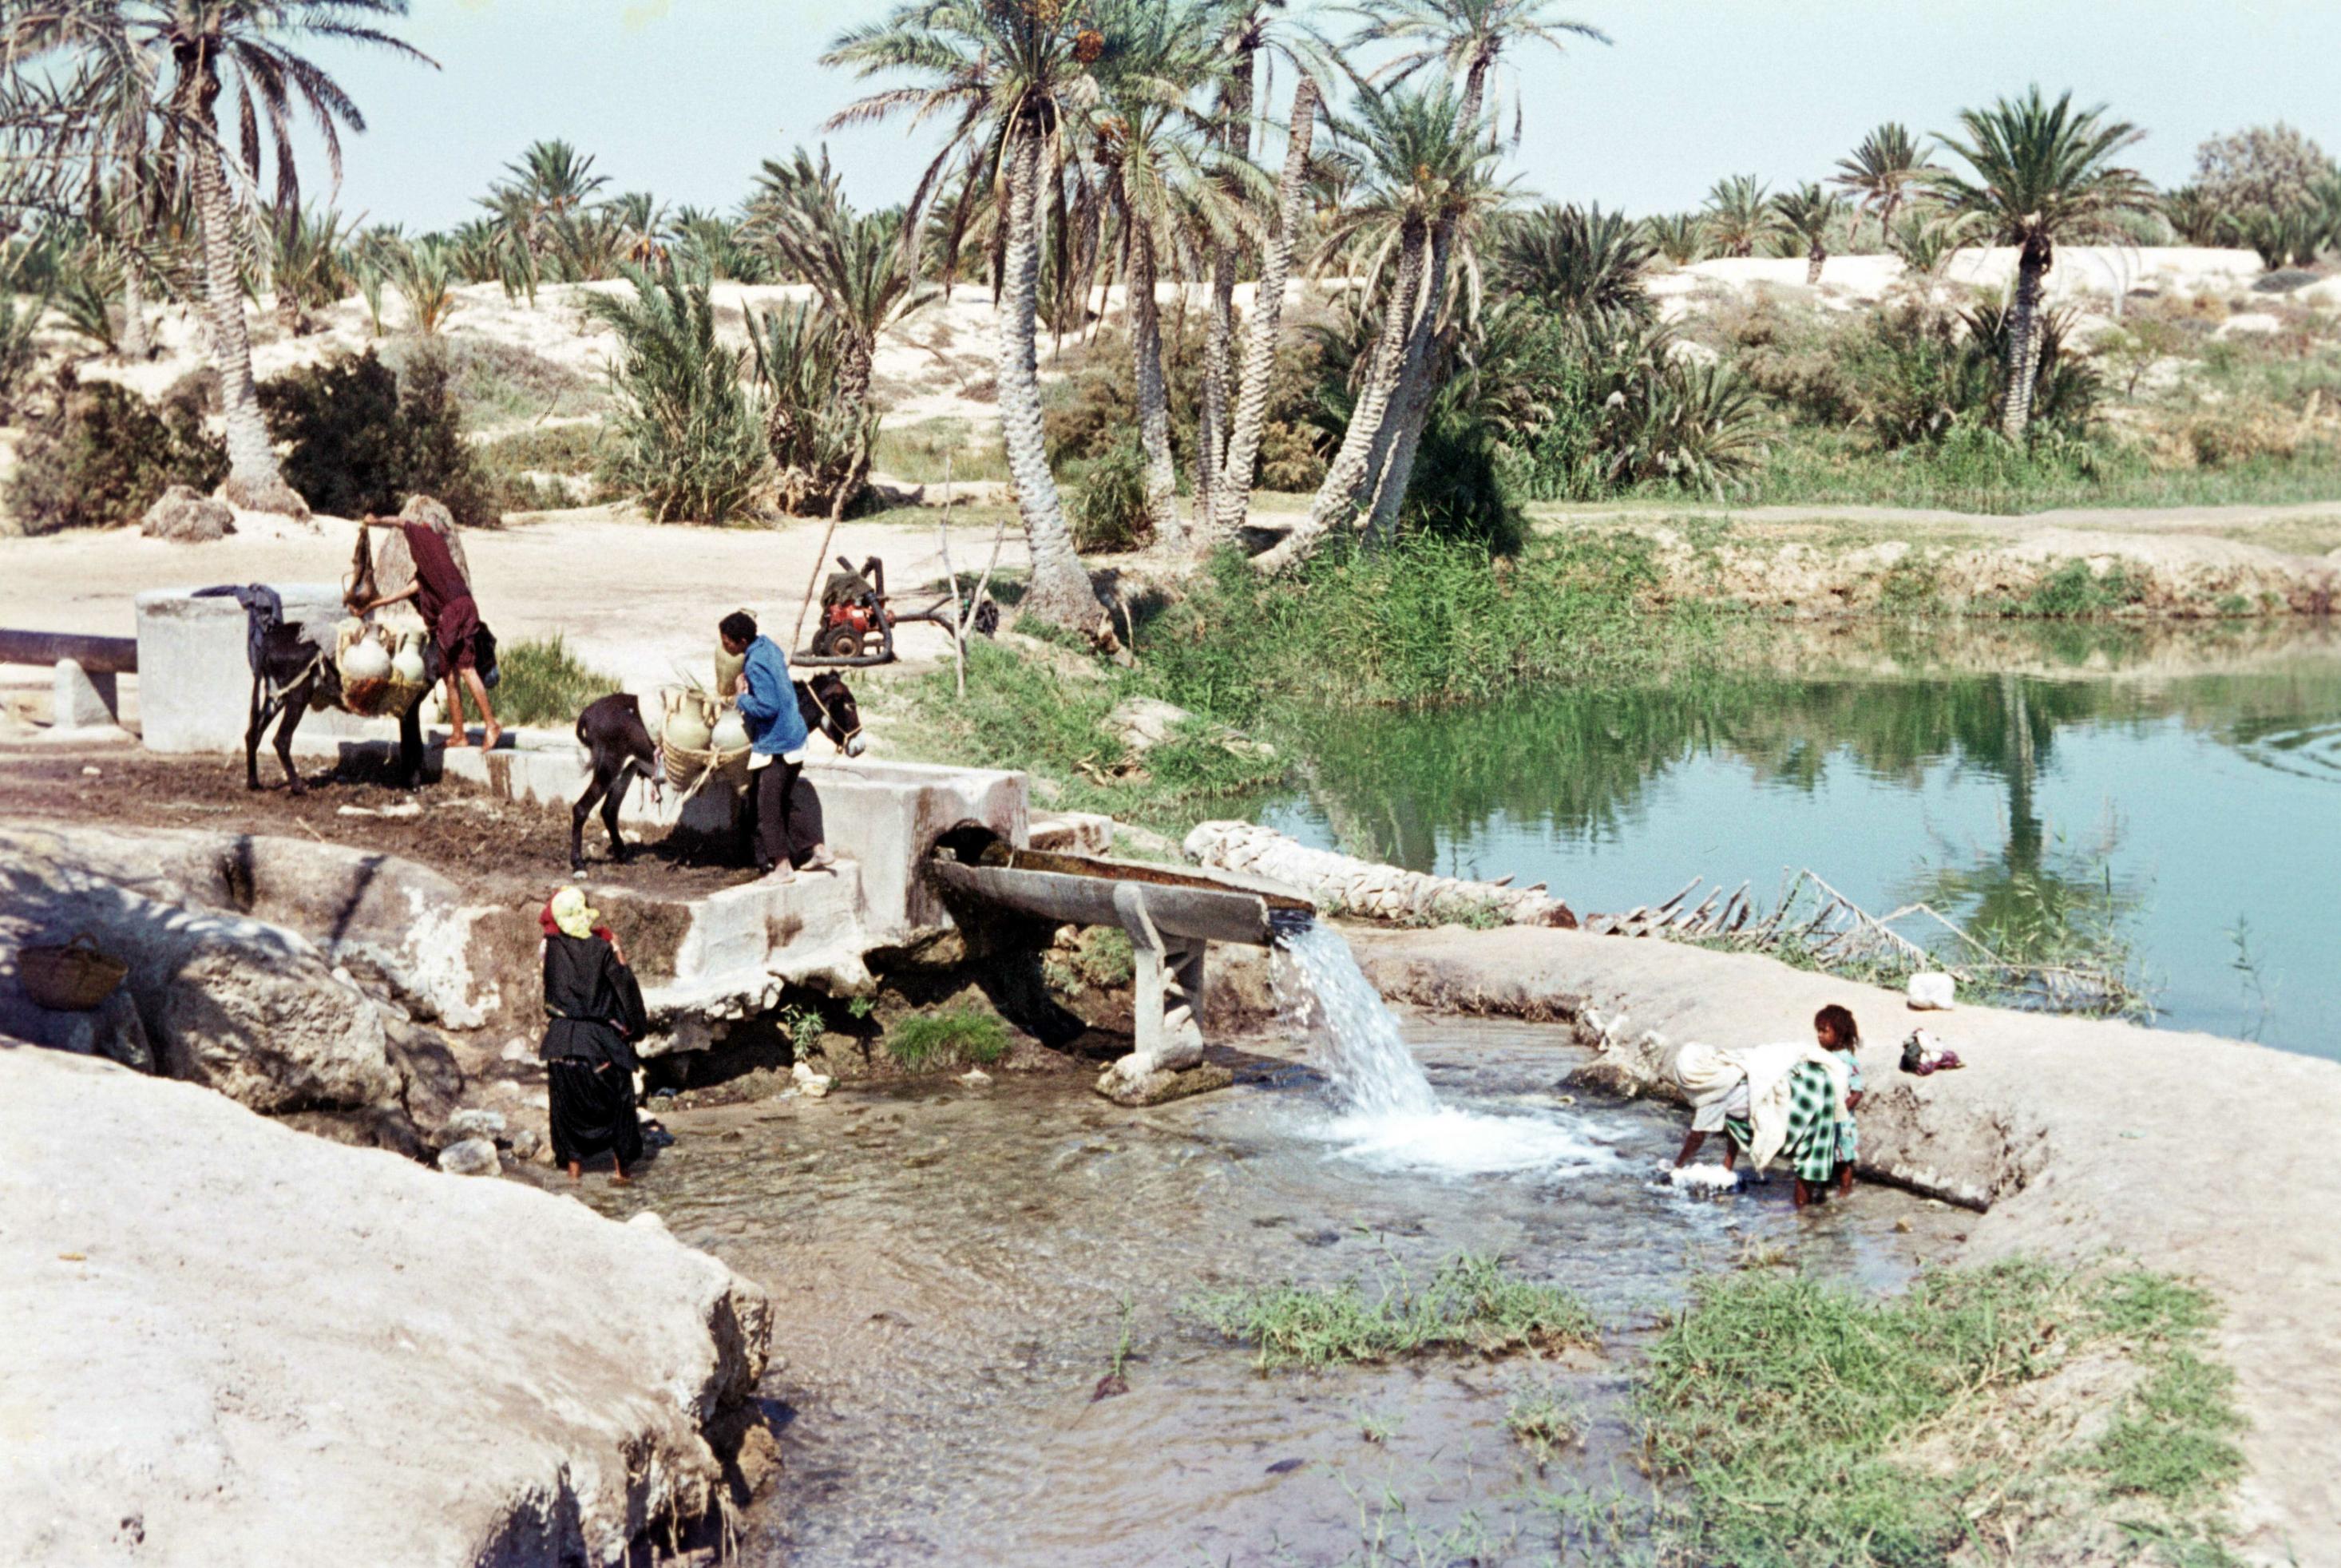 Historisches Foto: Tunesische Familie besorgt sich ihren Wasservorrat an einer Quelle in der Oase von Kebili. Ein Esel trägt Wasserkanister, mehrere Personen sitzen am Rand der Quelle.